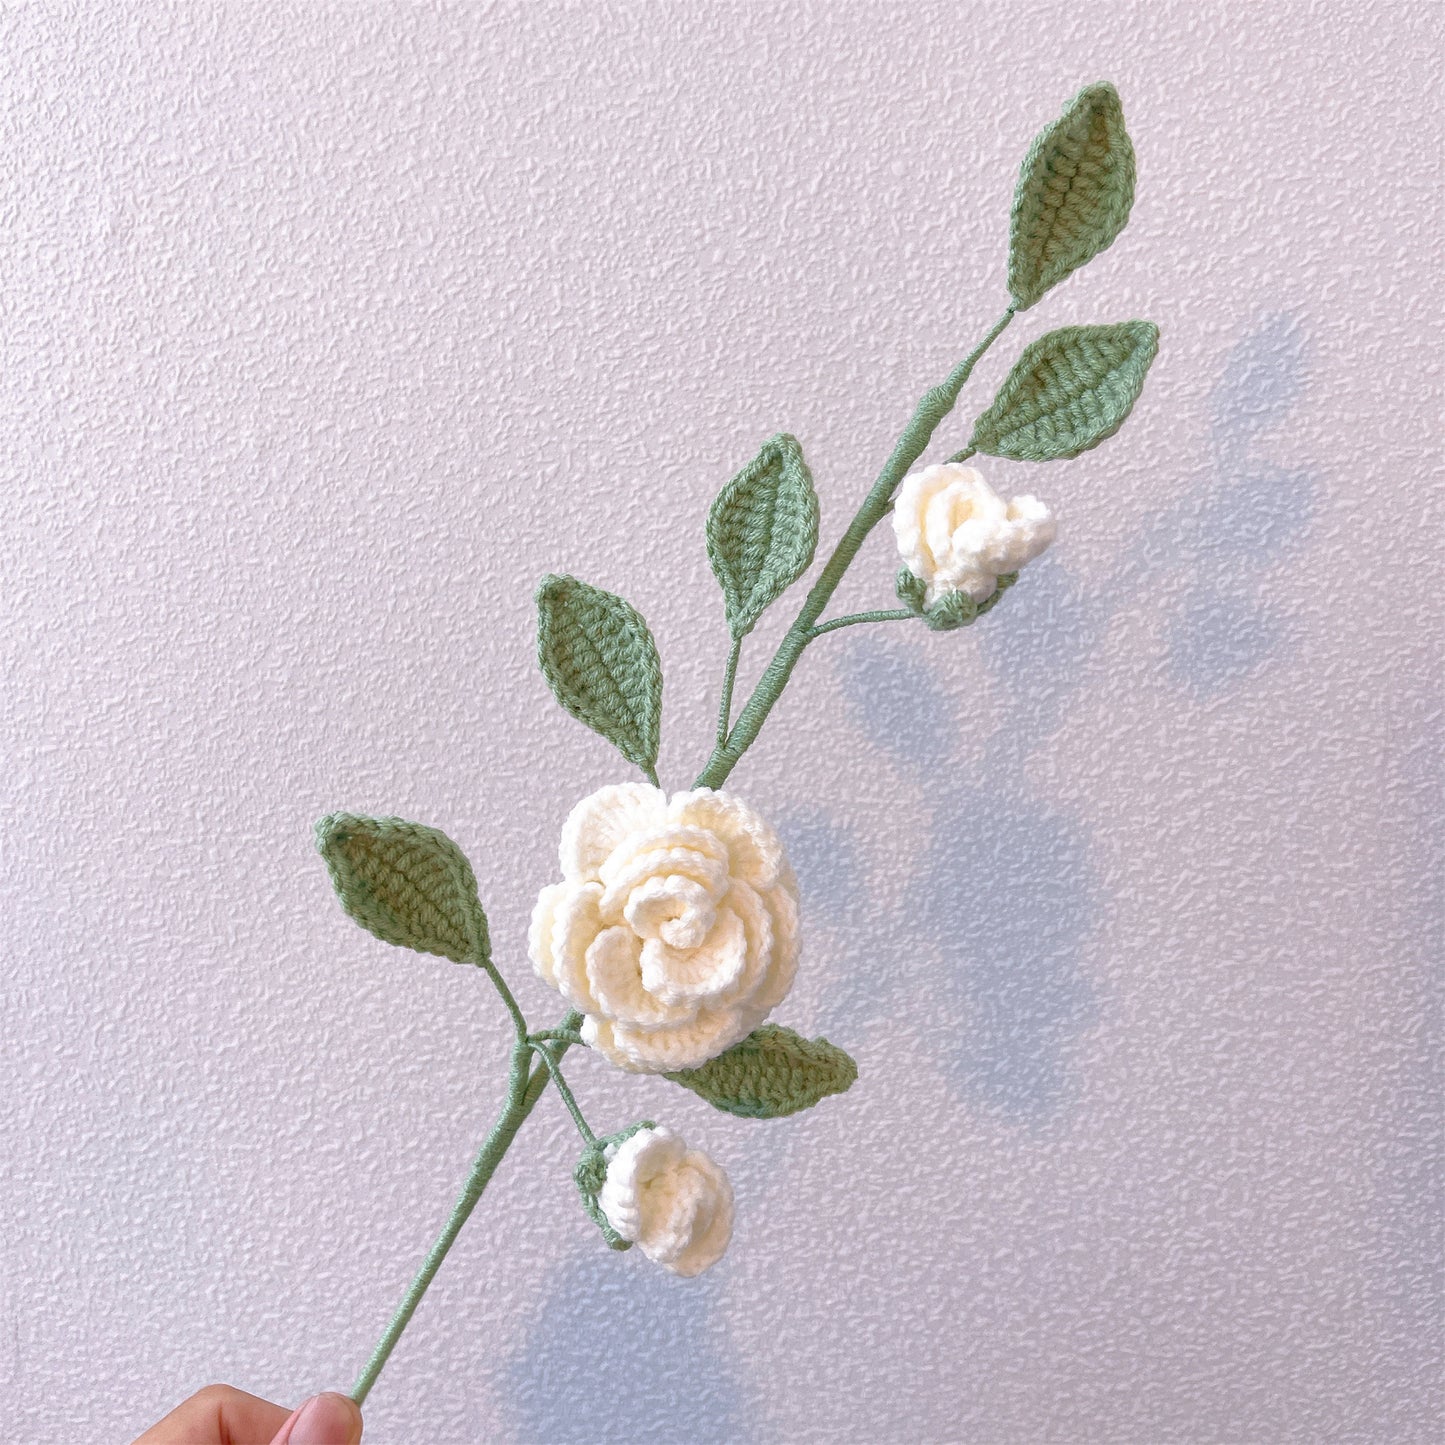 Bouquet de fleurs fabriqué à la main : un mélange délicat de fleurs de pêcher roses, de camélias blancs, de myosotis jaunes et de camomille blanche